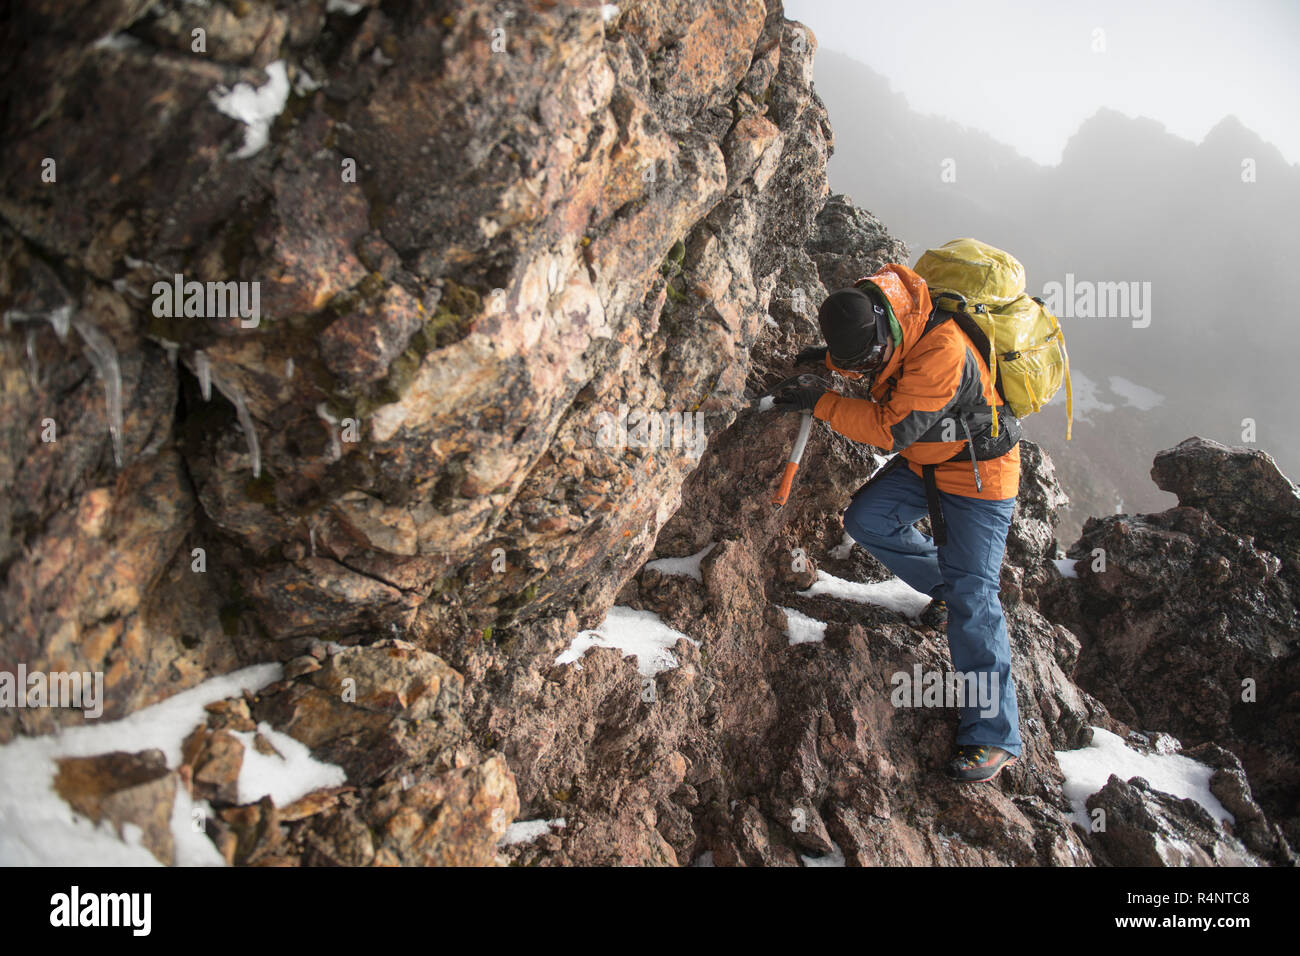 Un homme grimpe à travers une section rocheuse à l'aide d'un piolet, ou piolet, sur son ascension de l'Iztaccihuatl volcanoe Izta-Popo Zoquiapan au parc national dans la région de Puebla, Mexique Banque D'Images